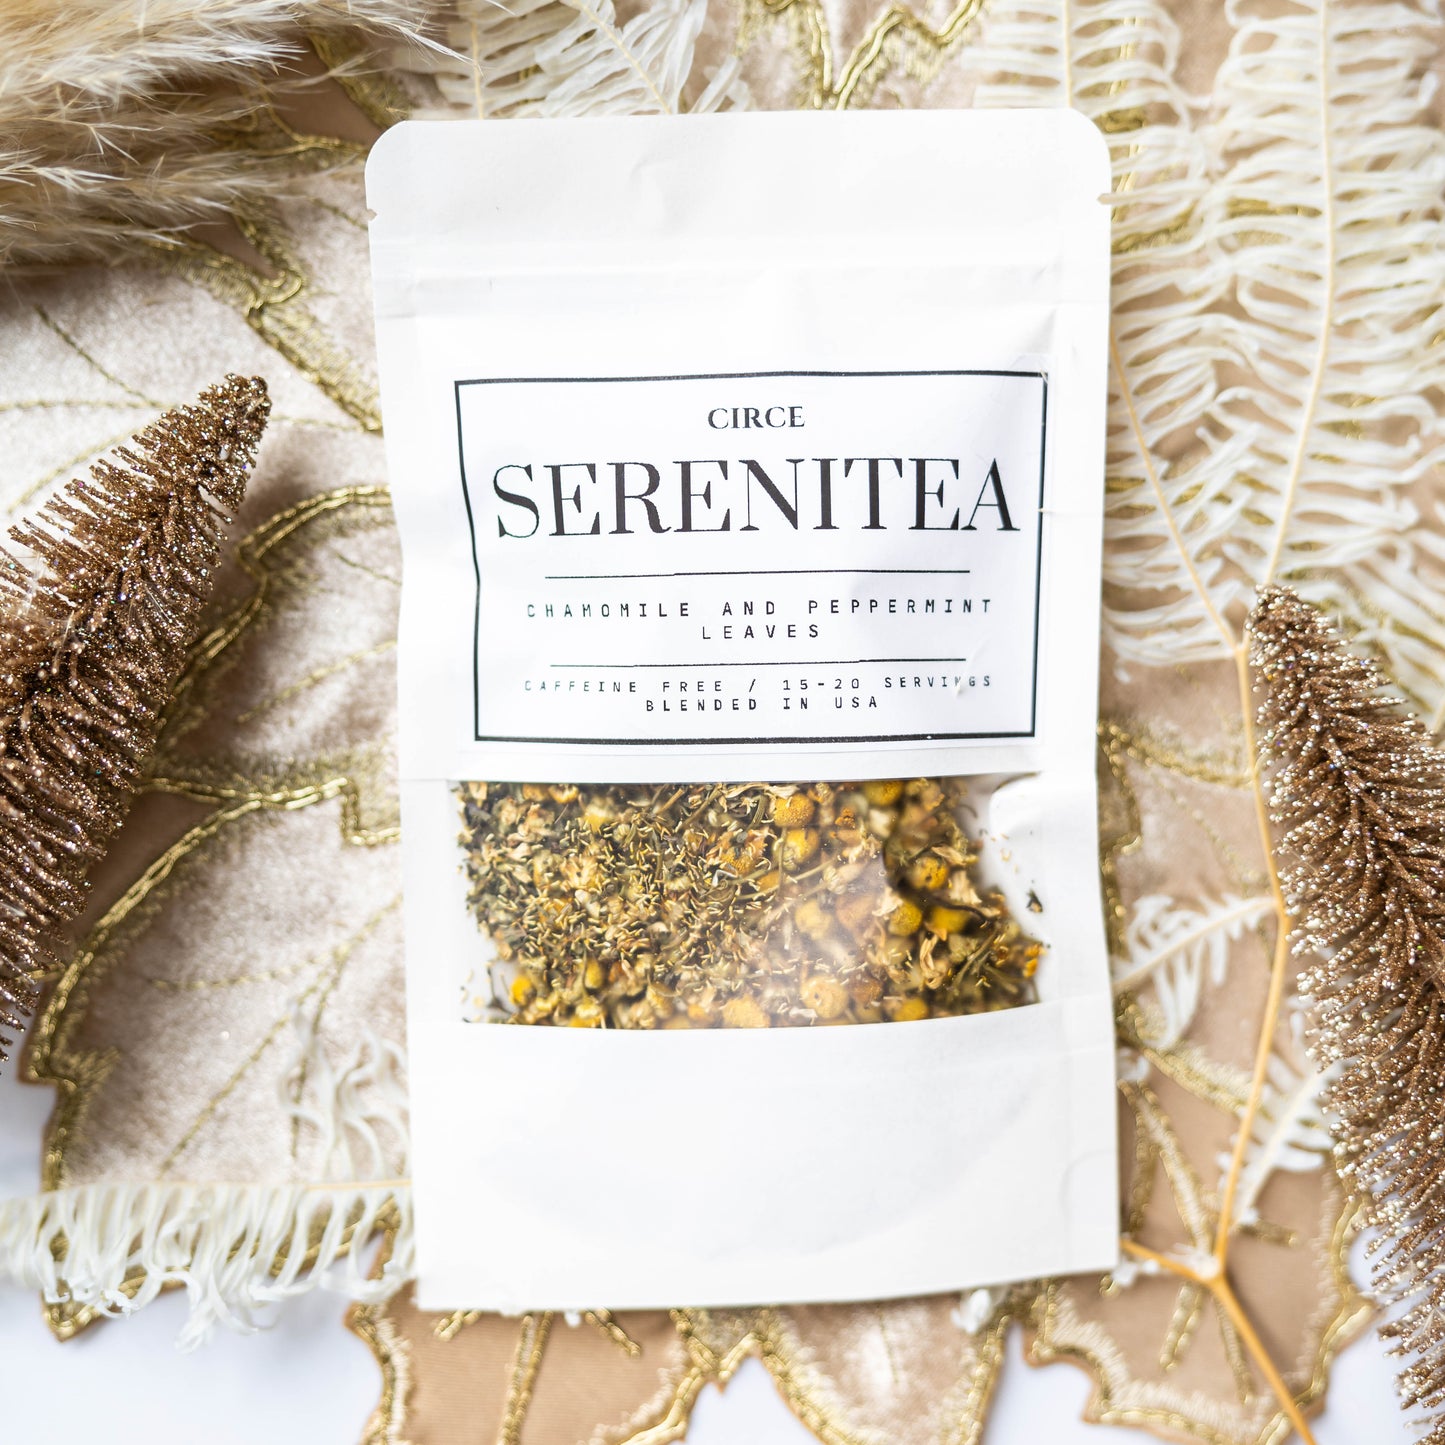 Serenitea - Circe Tea Blends  from Circe Boutique